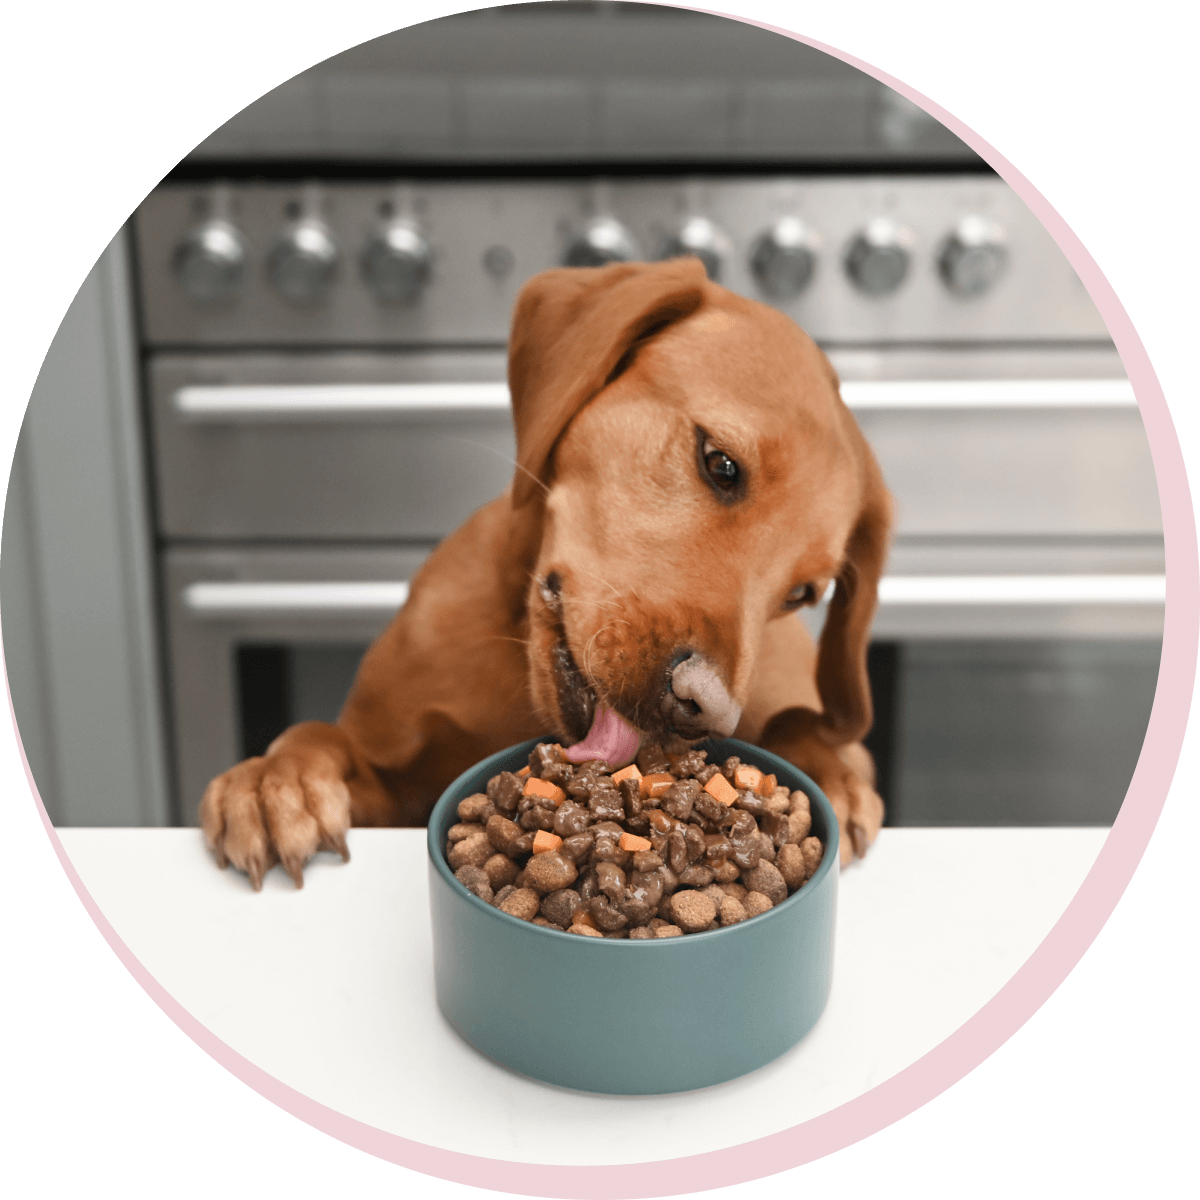 Dog licking bowl